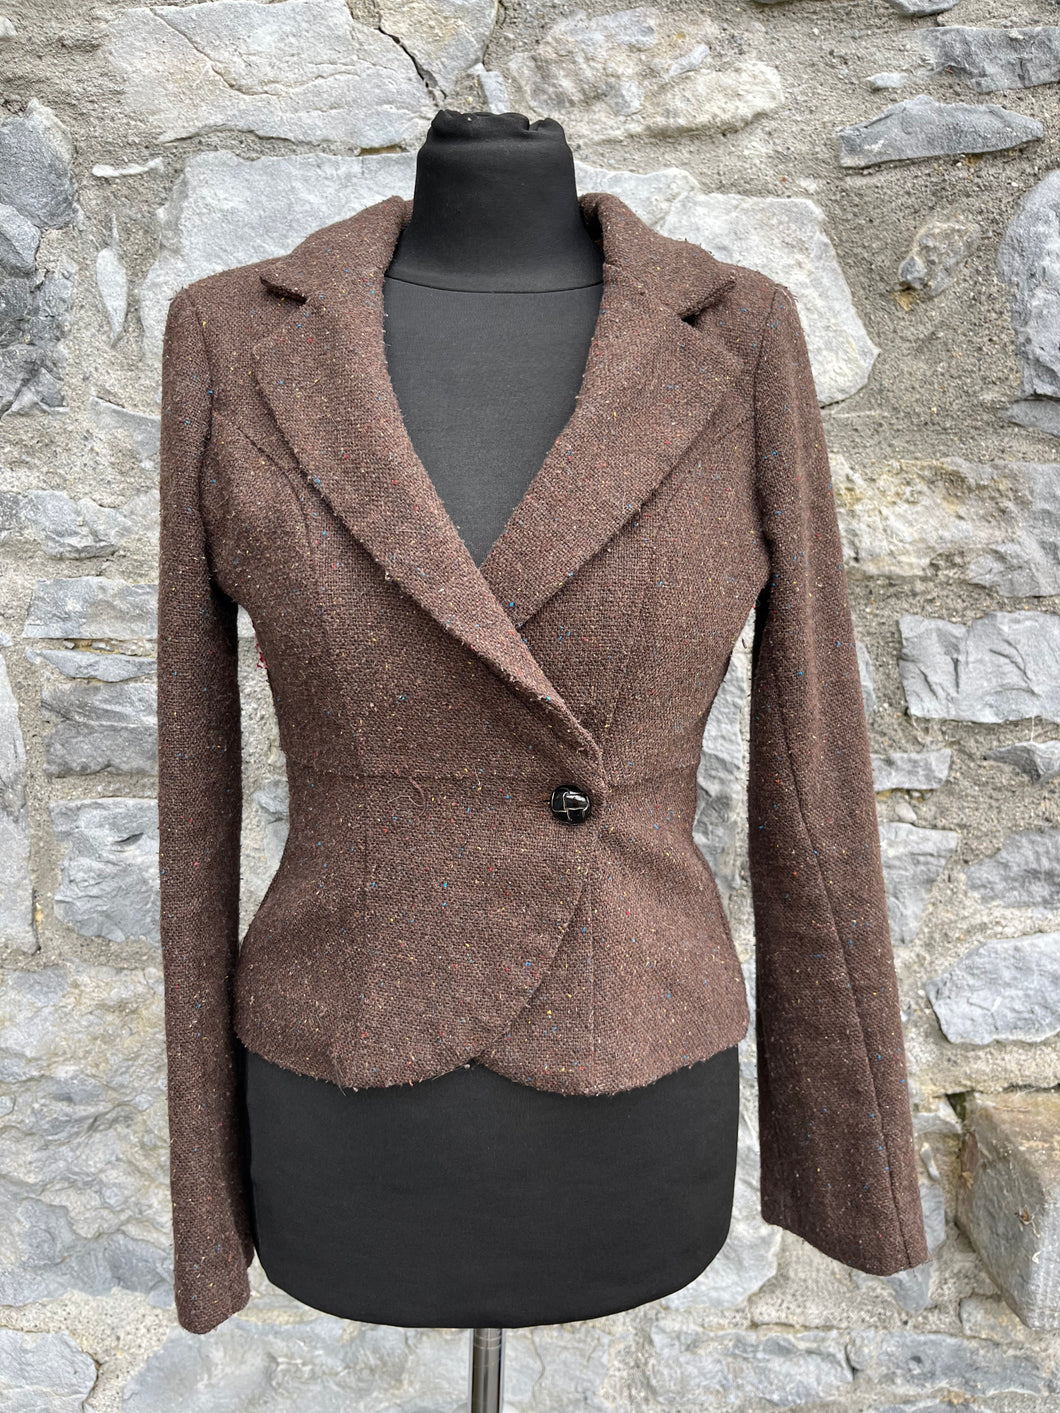 Brown tweed jacket uk 6-8